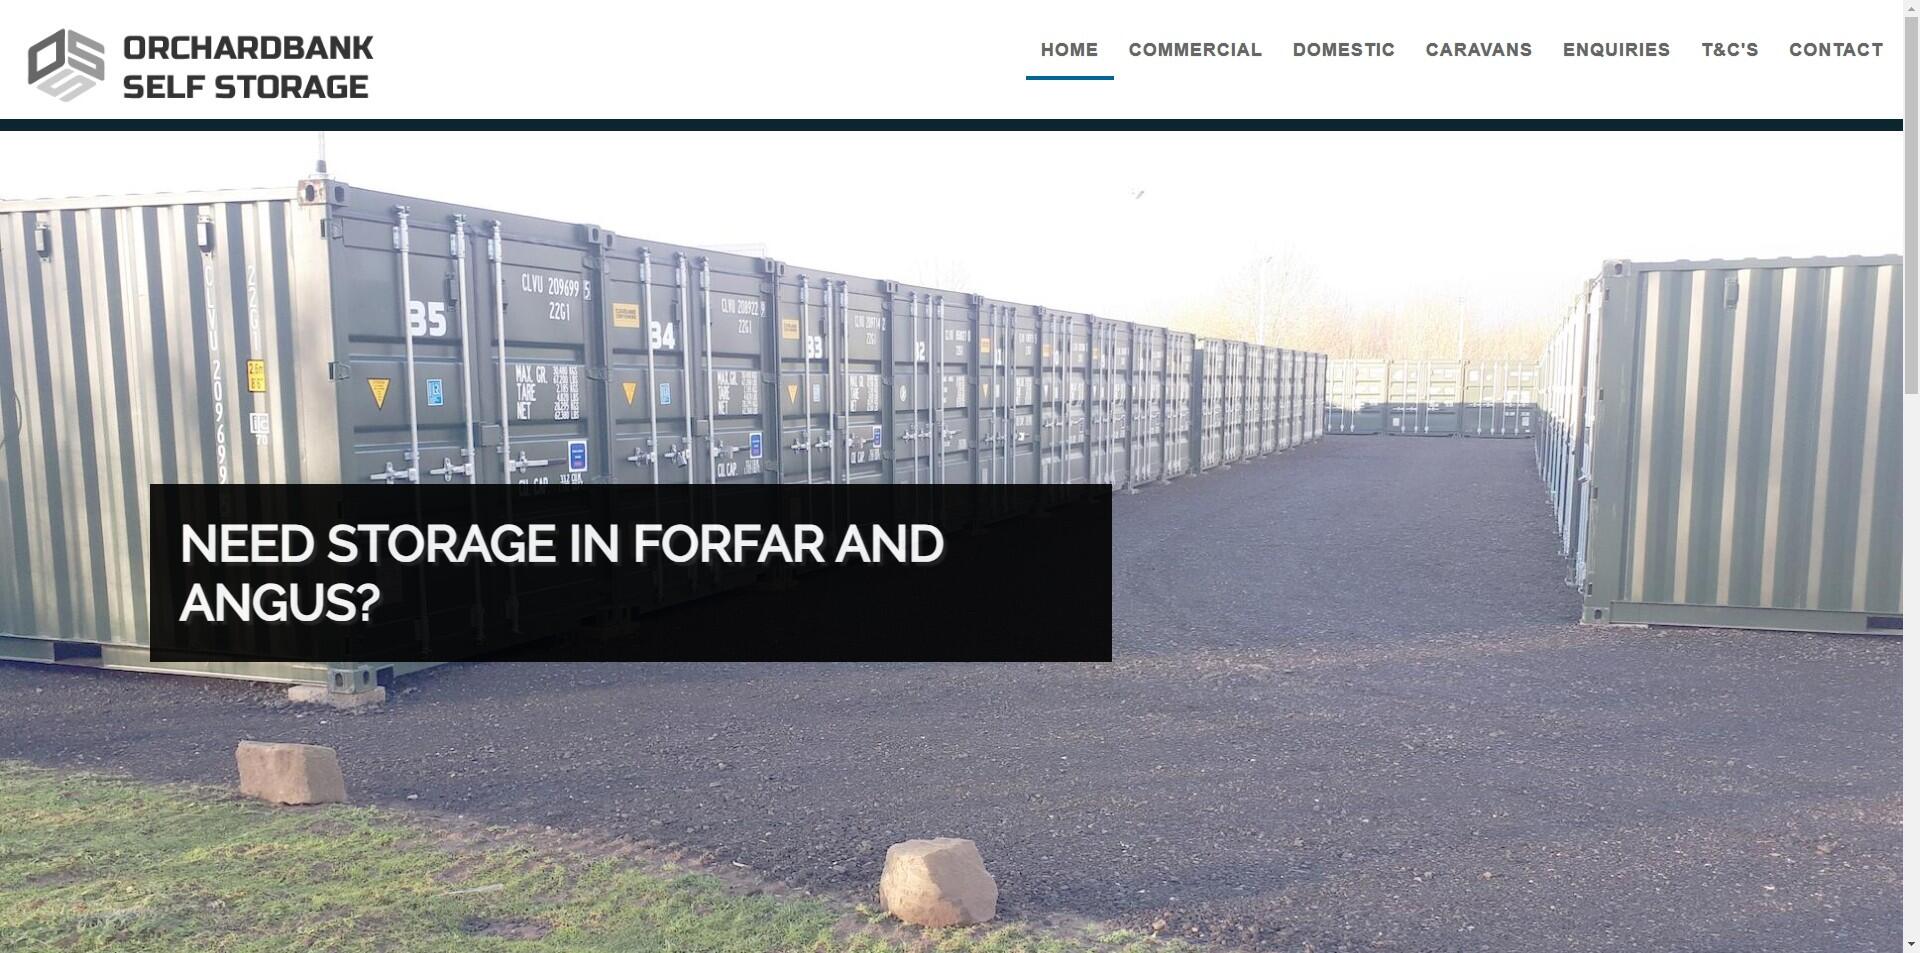 website designed for Orchardbank Self Storage